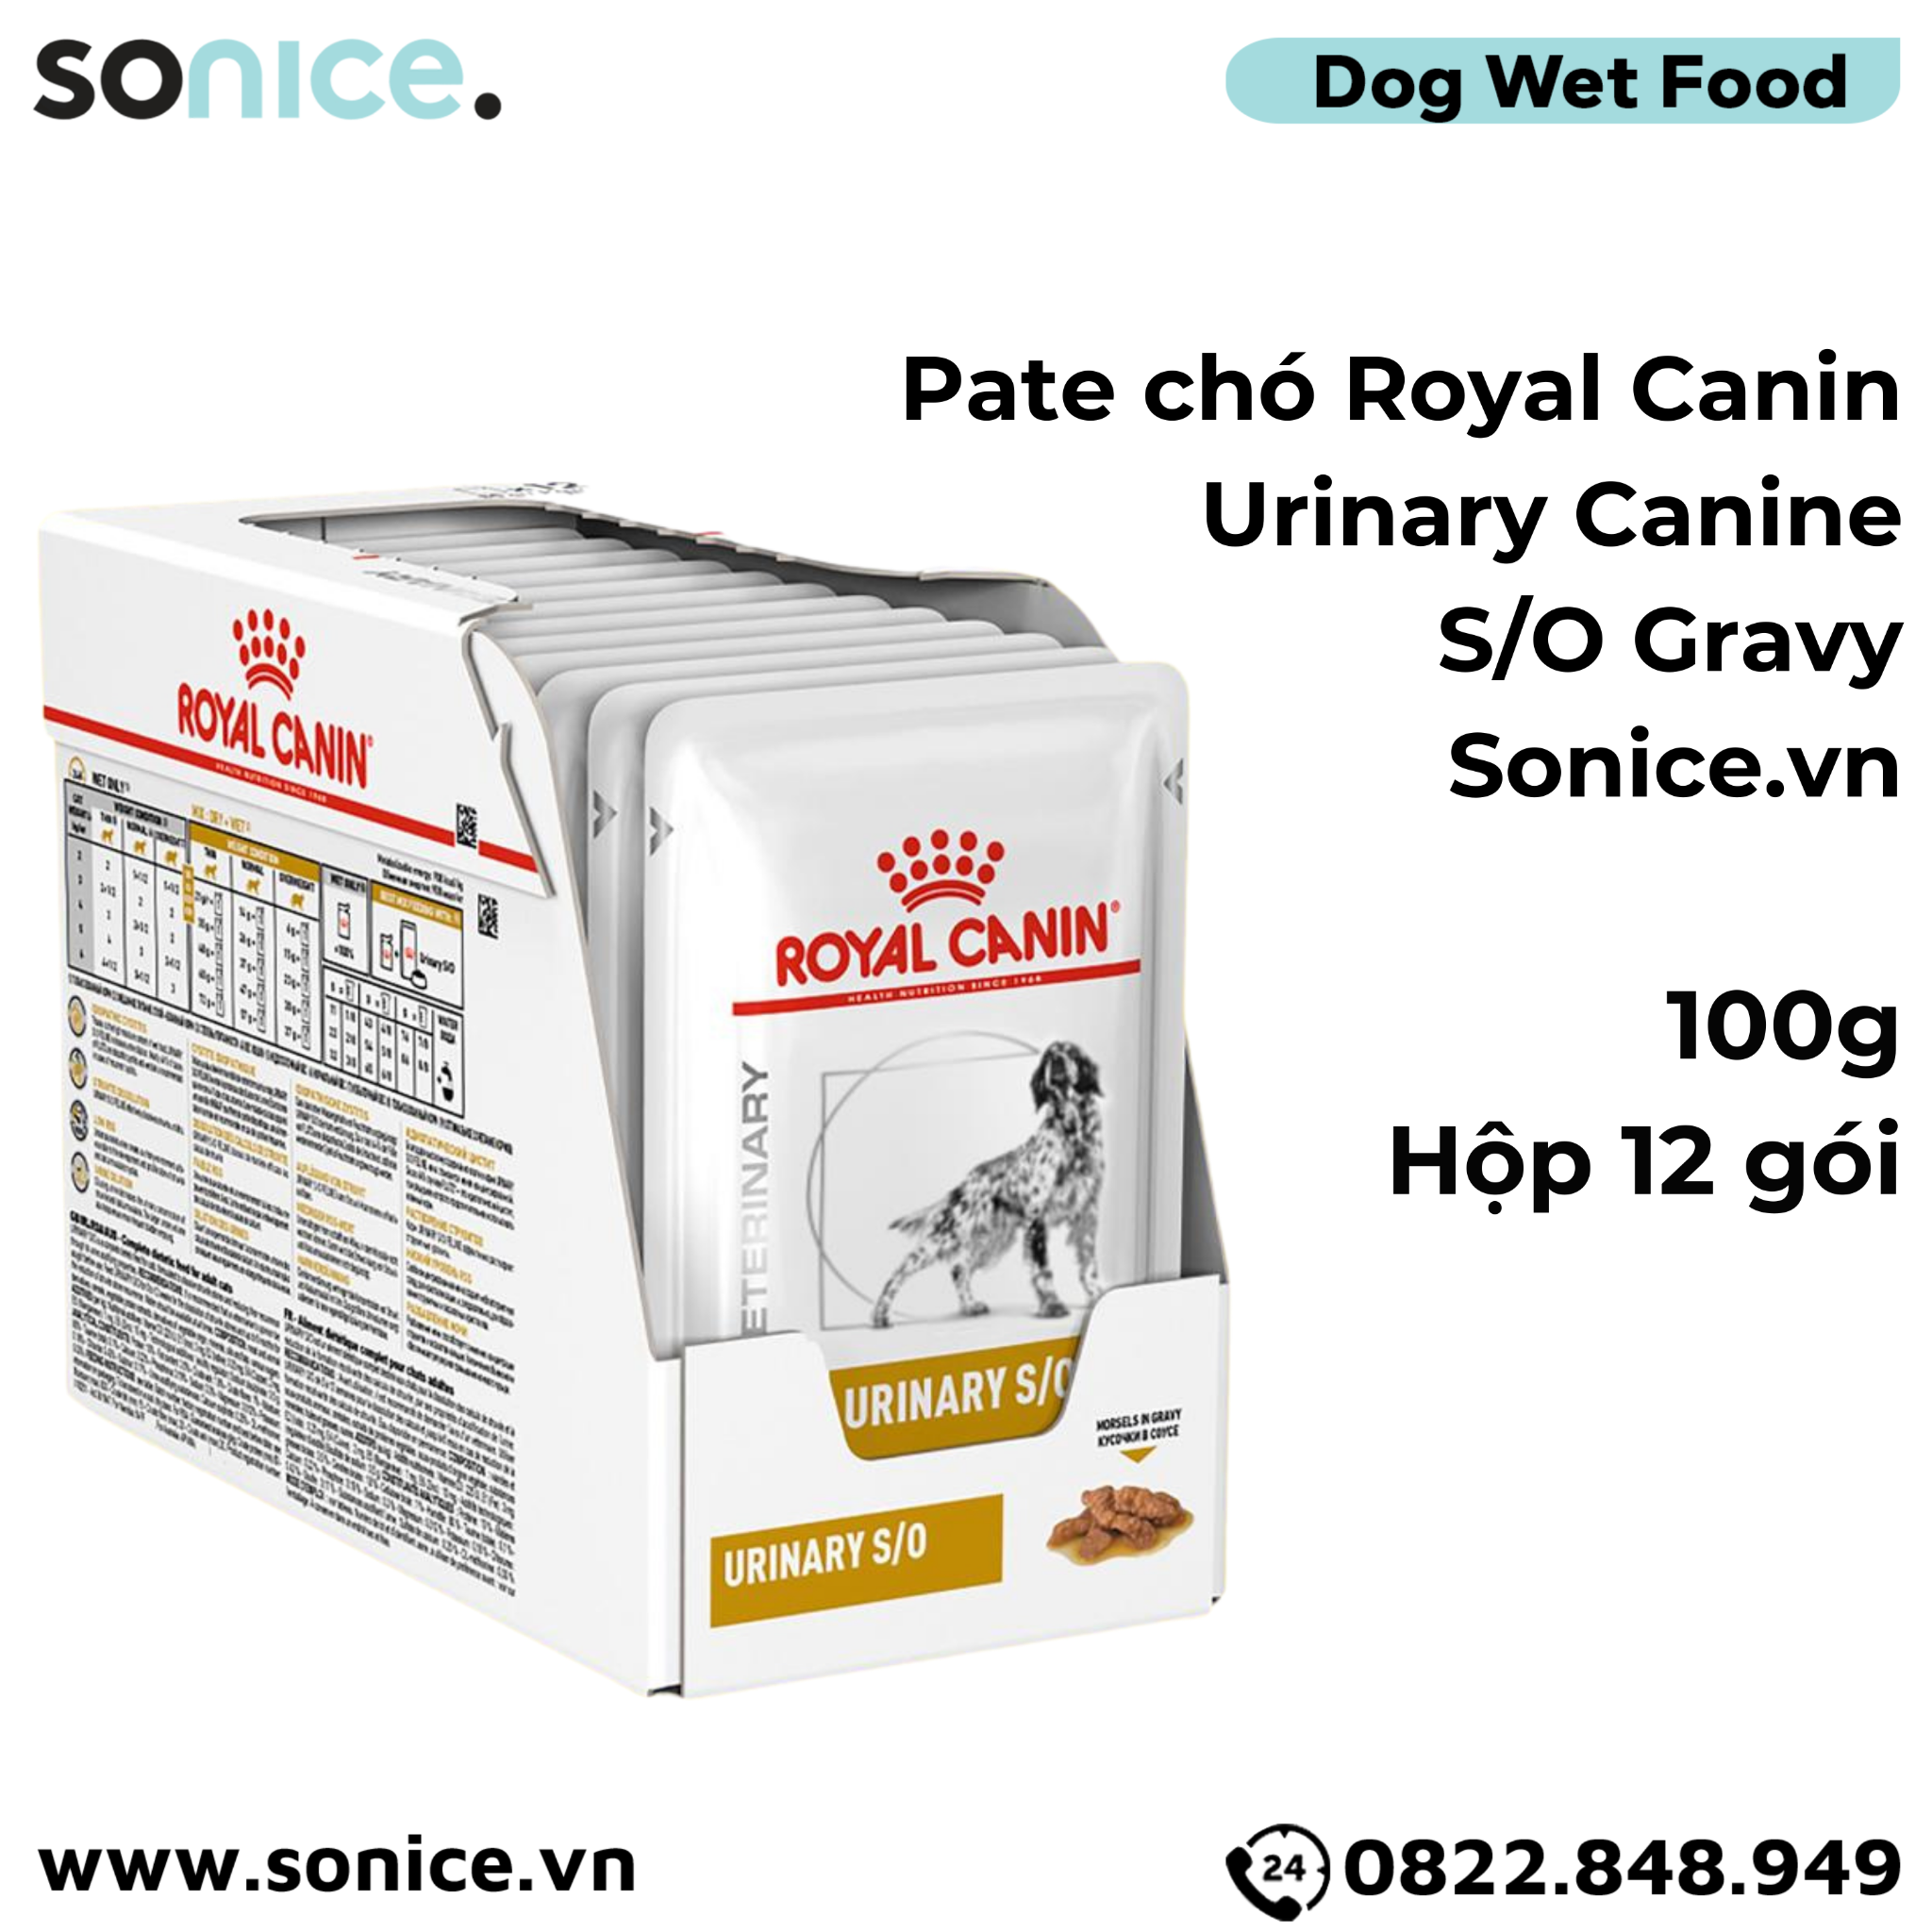  Pate chó Royal Canin Urinary Canine S/O Gravy 100g - Hộp 12 gói - Hỗ trợ trị sỏi bàng quang SONICE. 